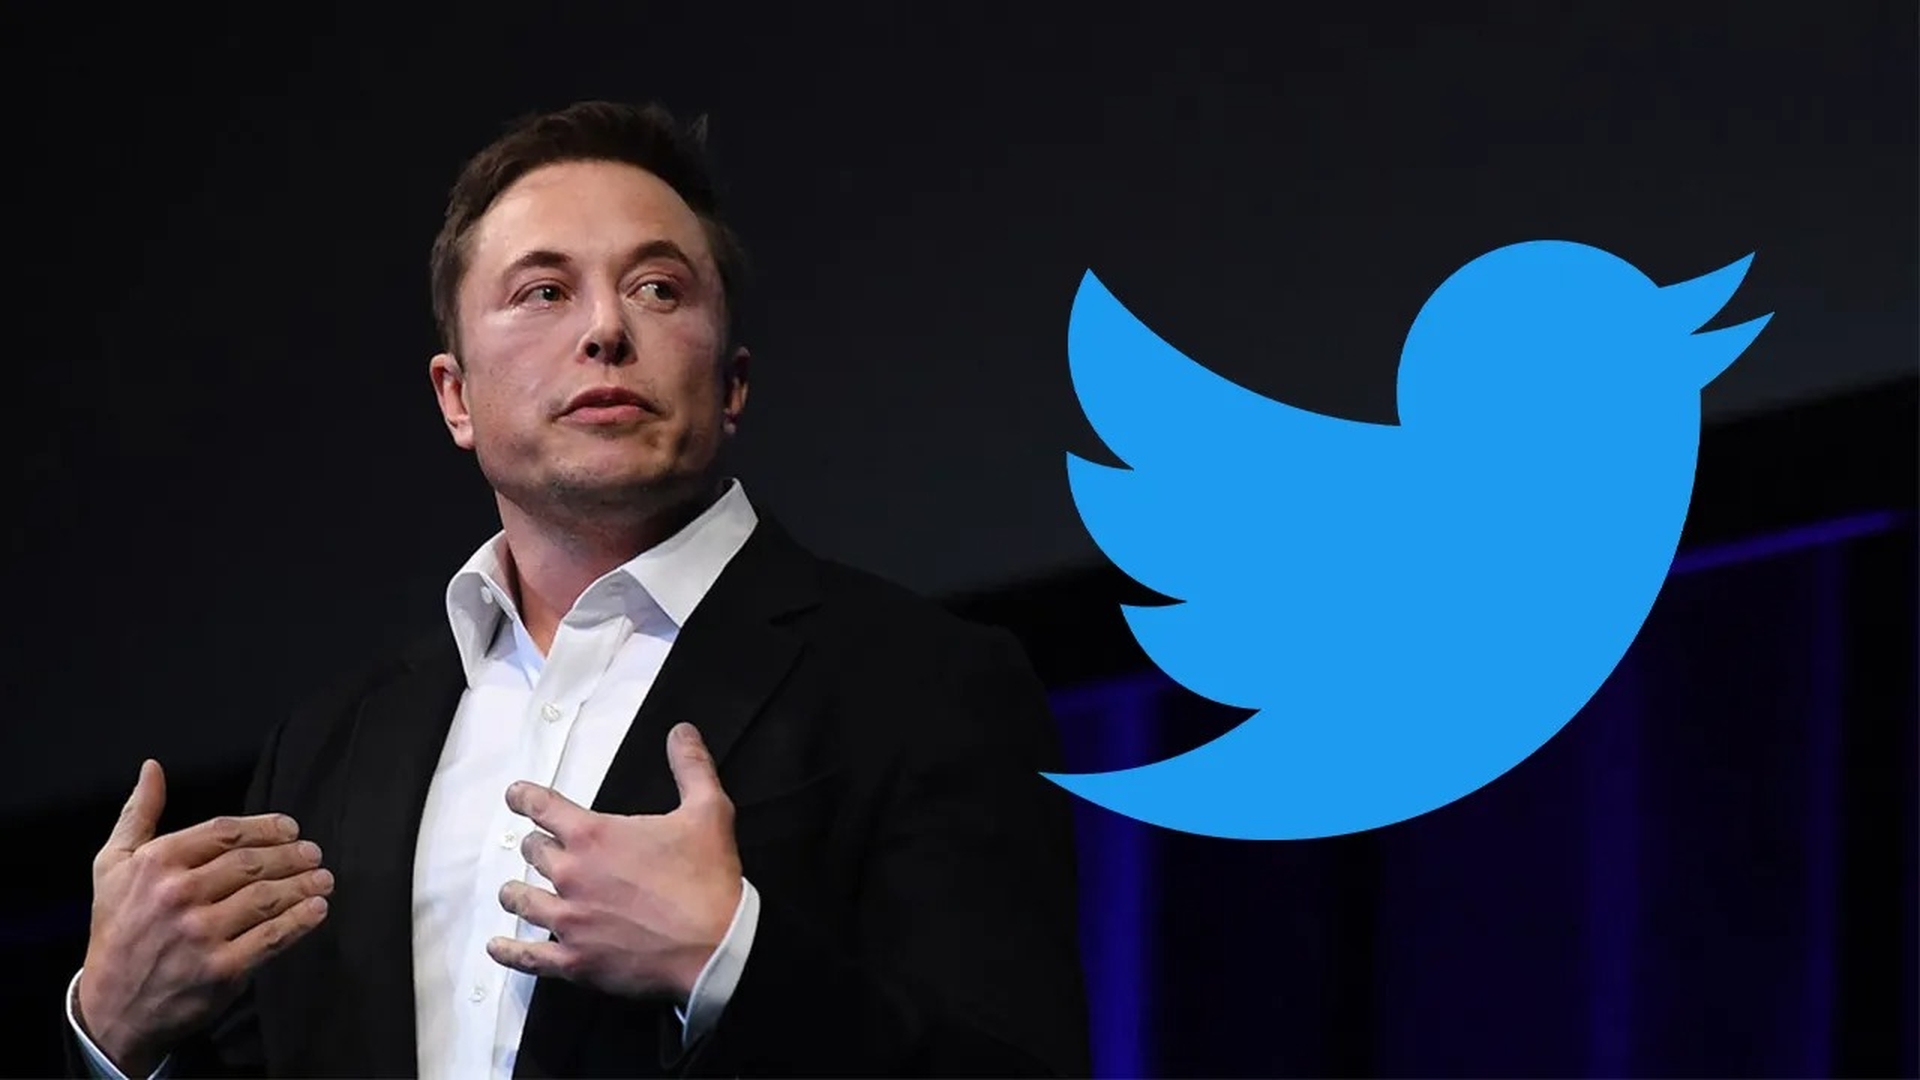 L’accordo su Twitter di Elon Musk potrebbe non andare a buon fine